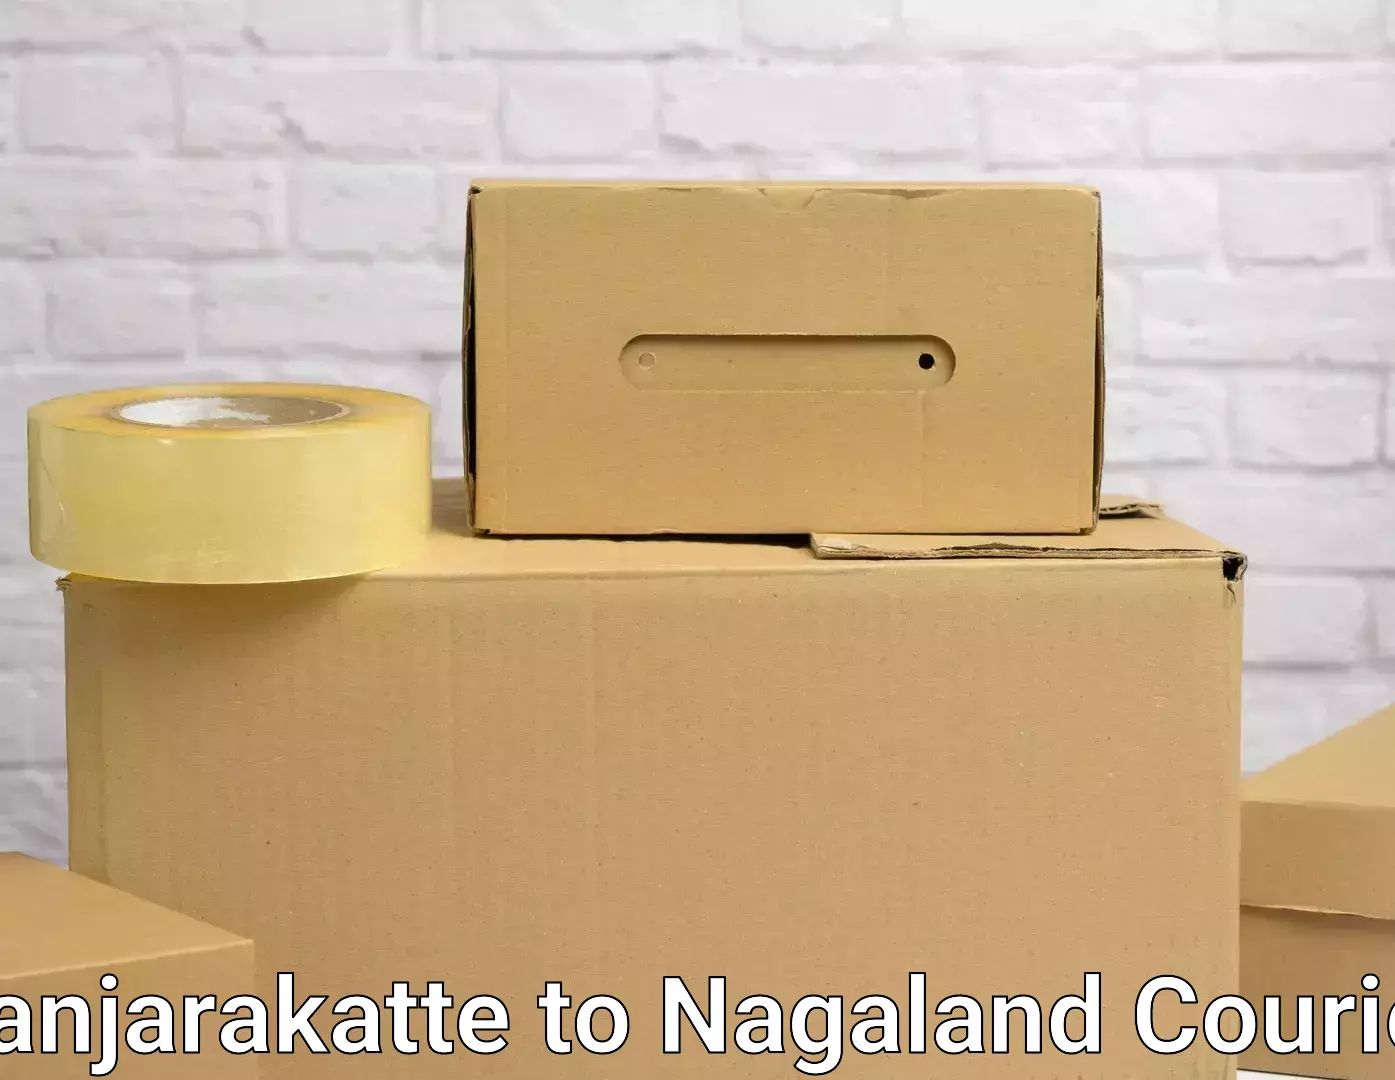 Professional furniture moving Kanjarakatte to NIT Nagaland